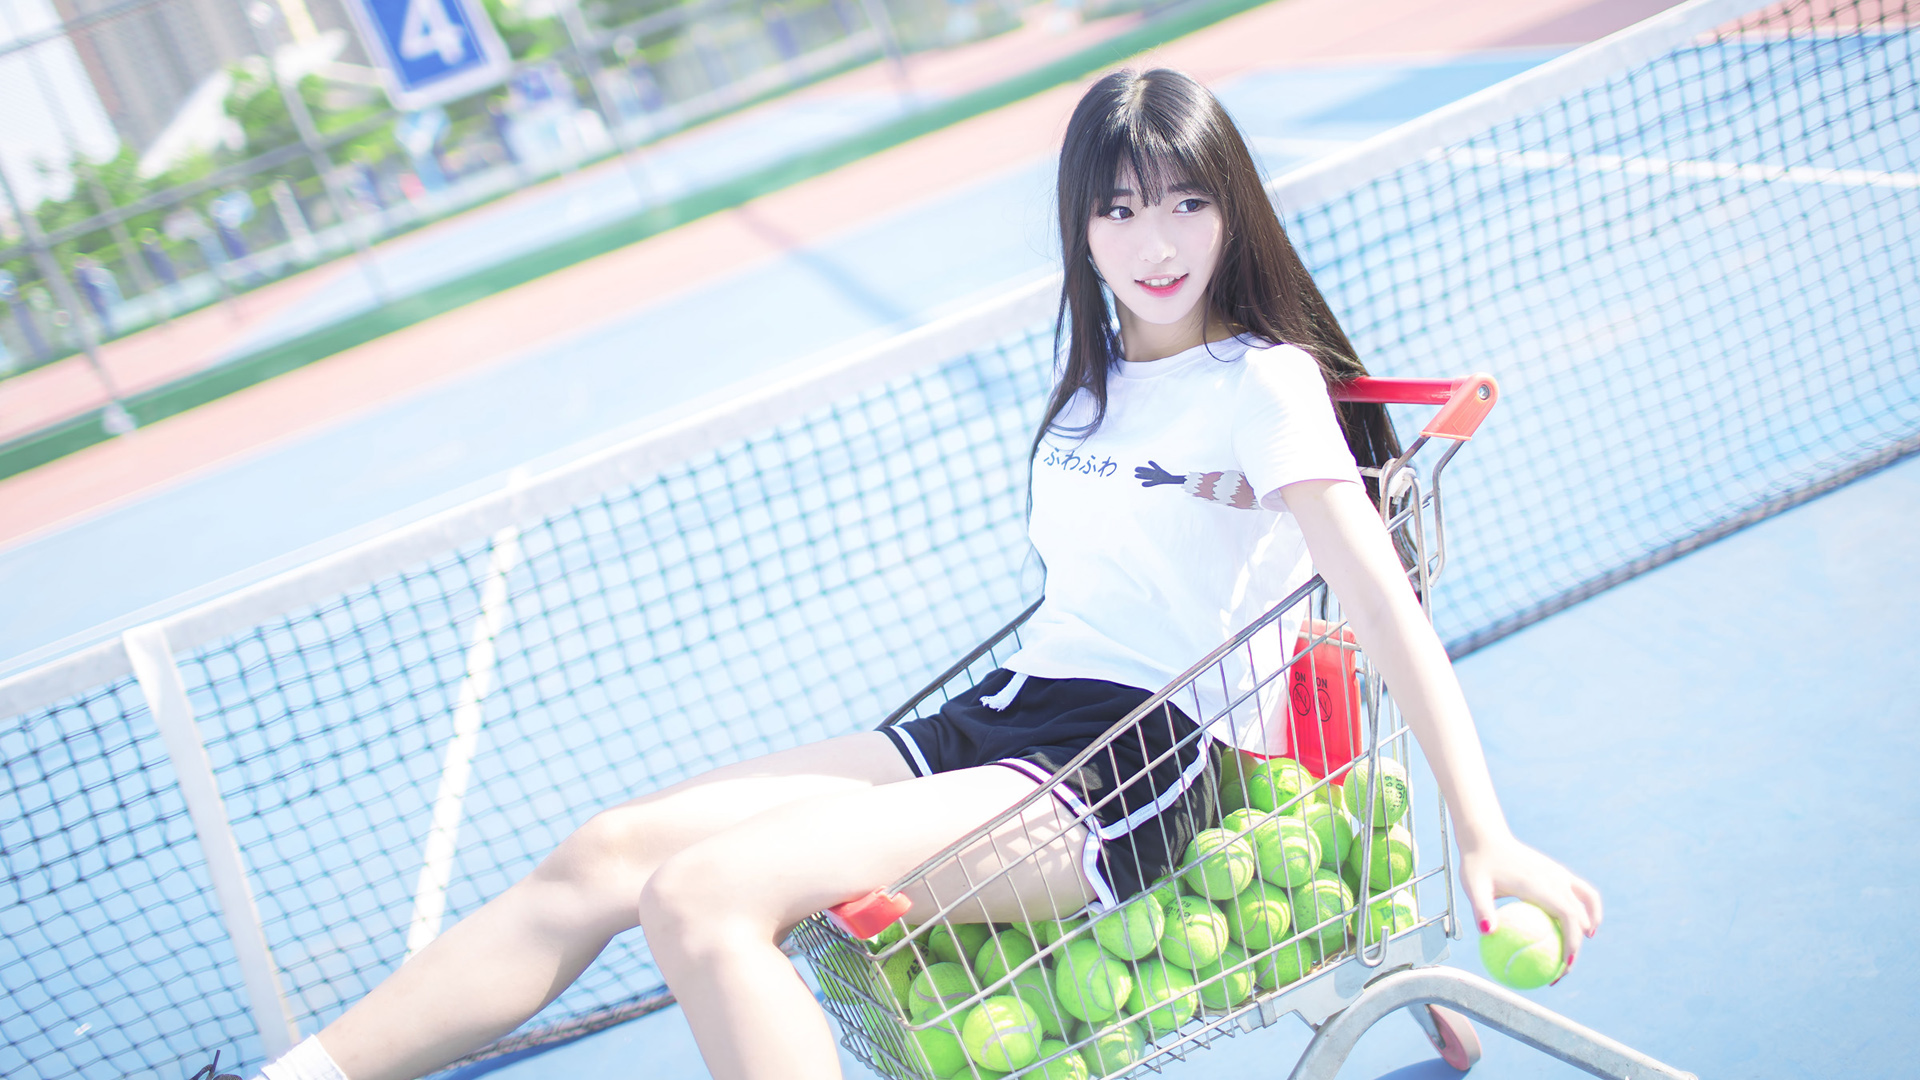 Model Women Photography Long Hair Asian Tennis Tennis Balls Black Hair T Shirt Women Outdoors 1920x1080